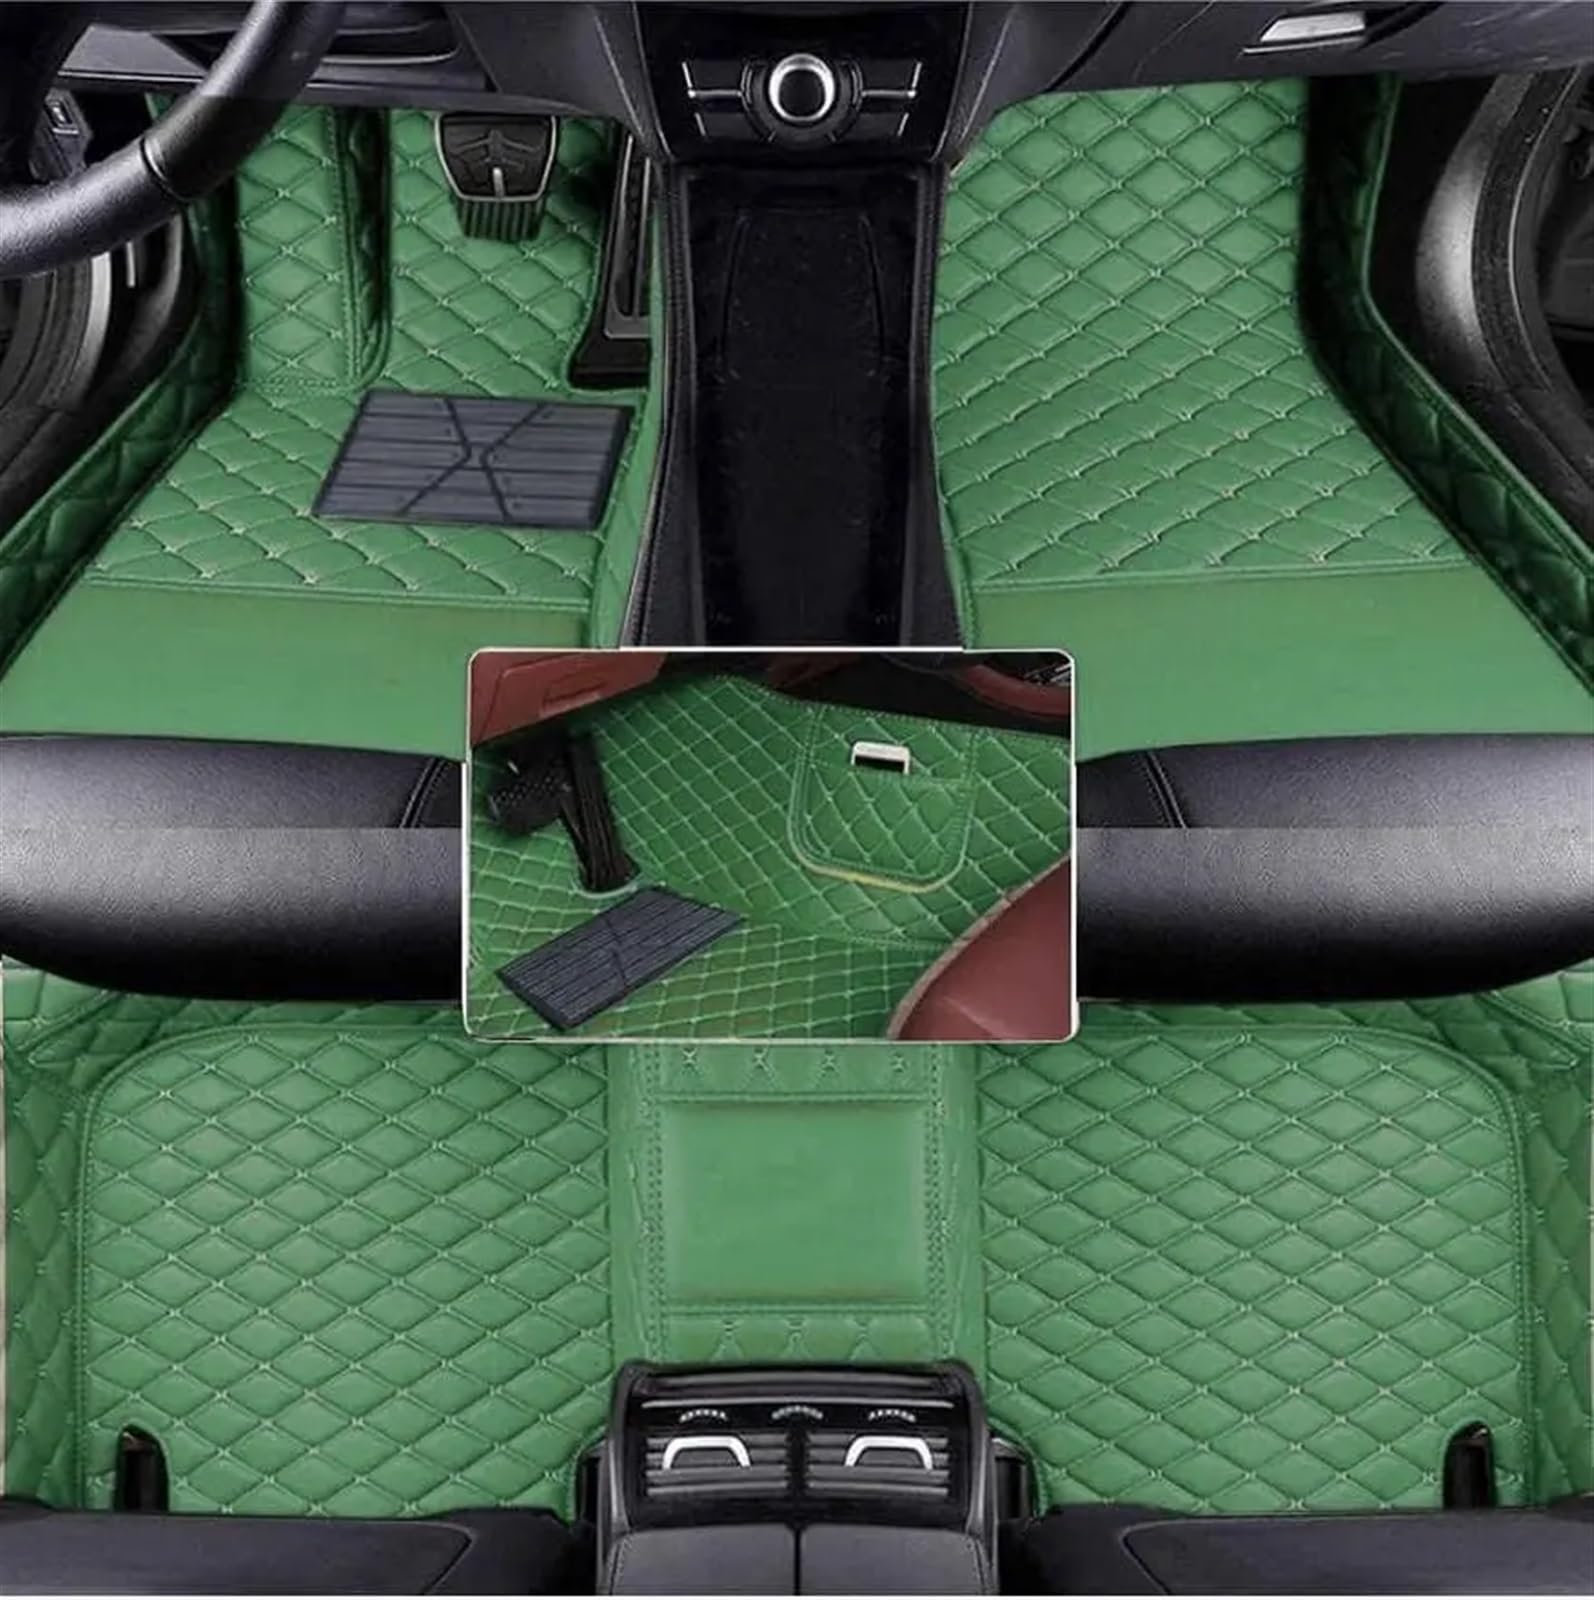 Auto Fußmatten Set Kompatibel Mit Chevrolet Für Tracker 2019 2020 2021 Benutzerdefinierte PU-Auto-Bodenmatte Für Schutz des Fahrzeugteppichs Im Innenraum Fußpolster(Green) von ZHjLut